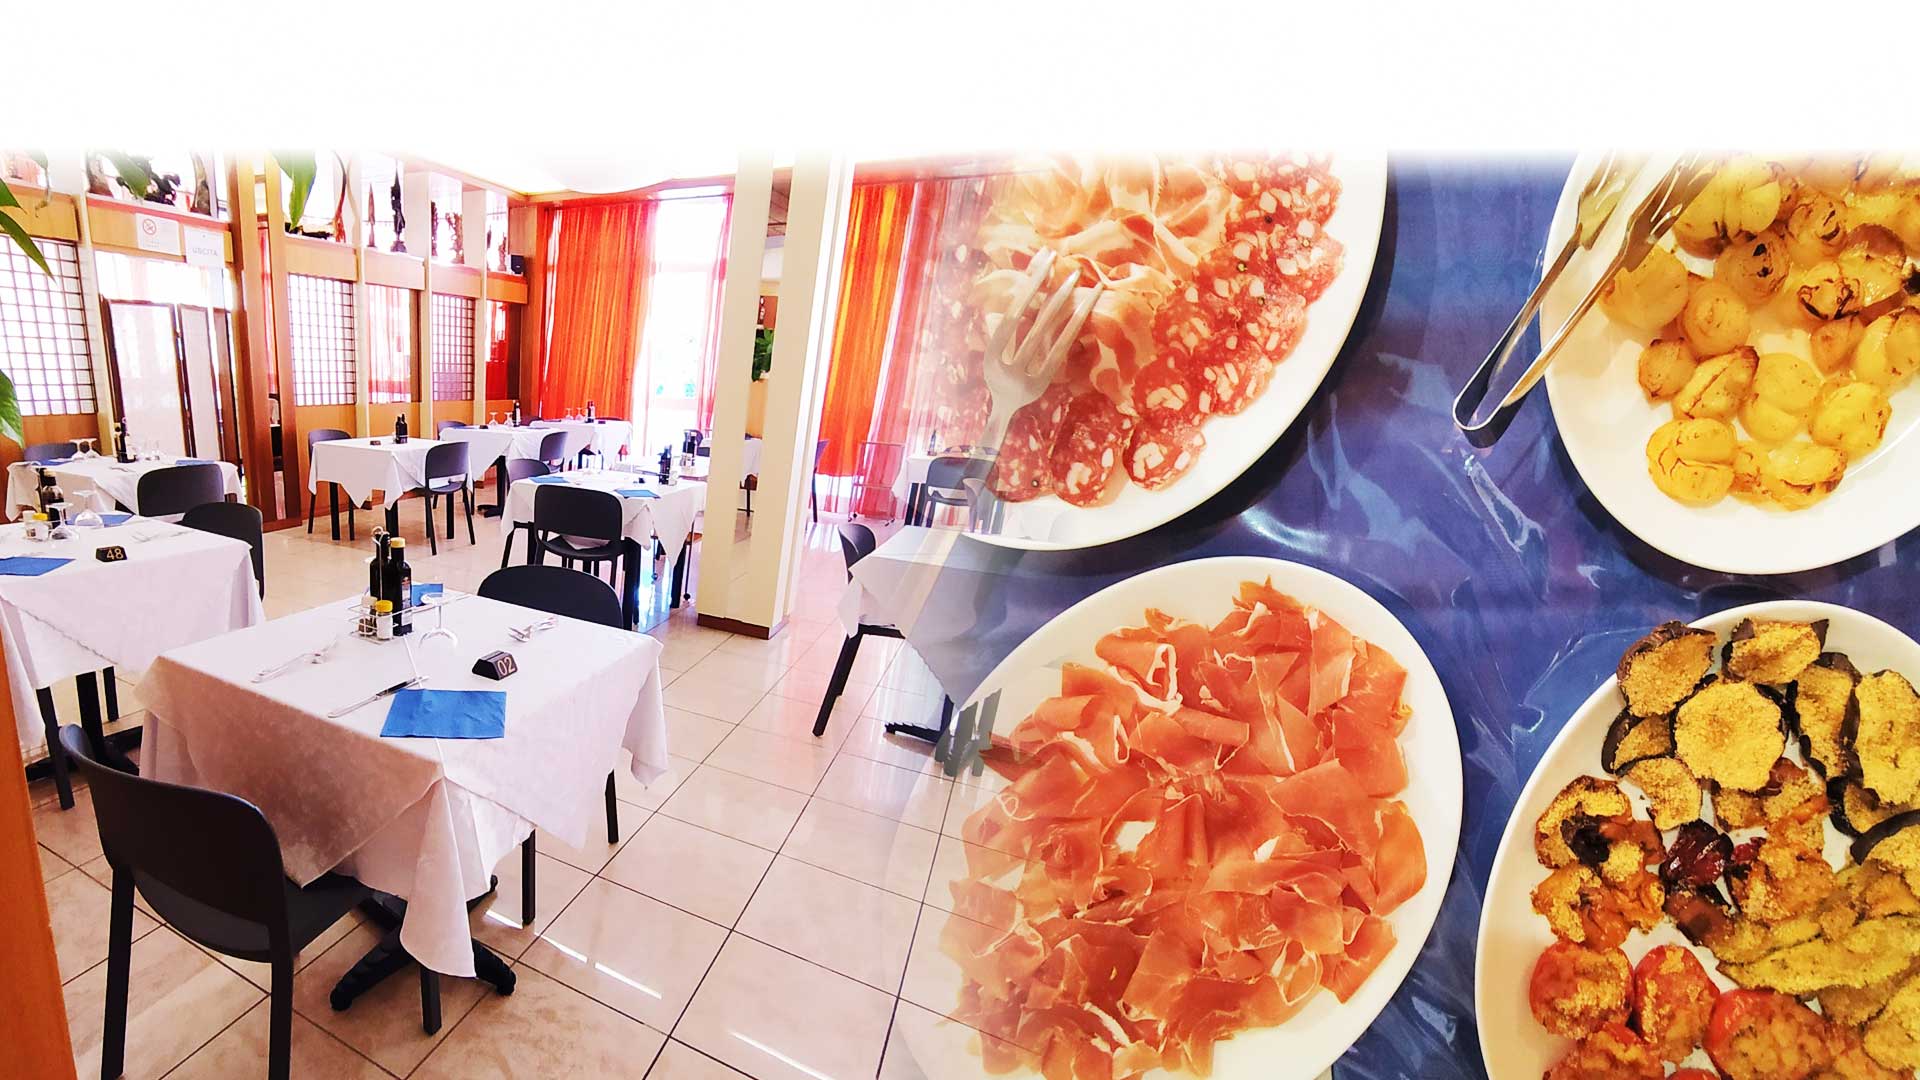 Hotel Capri cucina romagnola